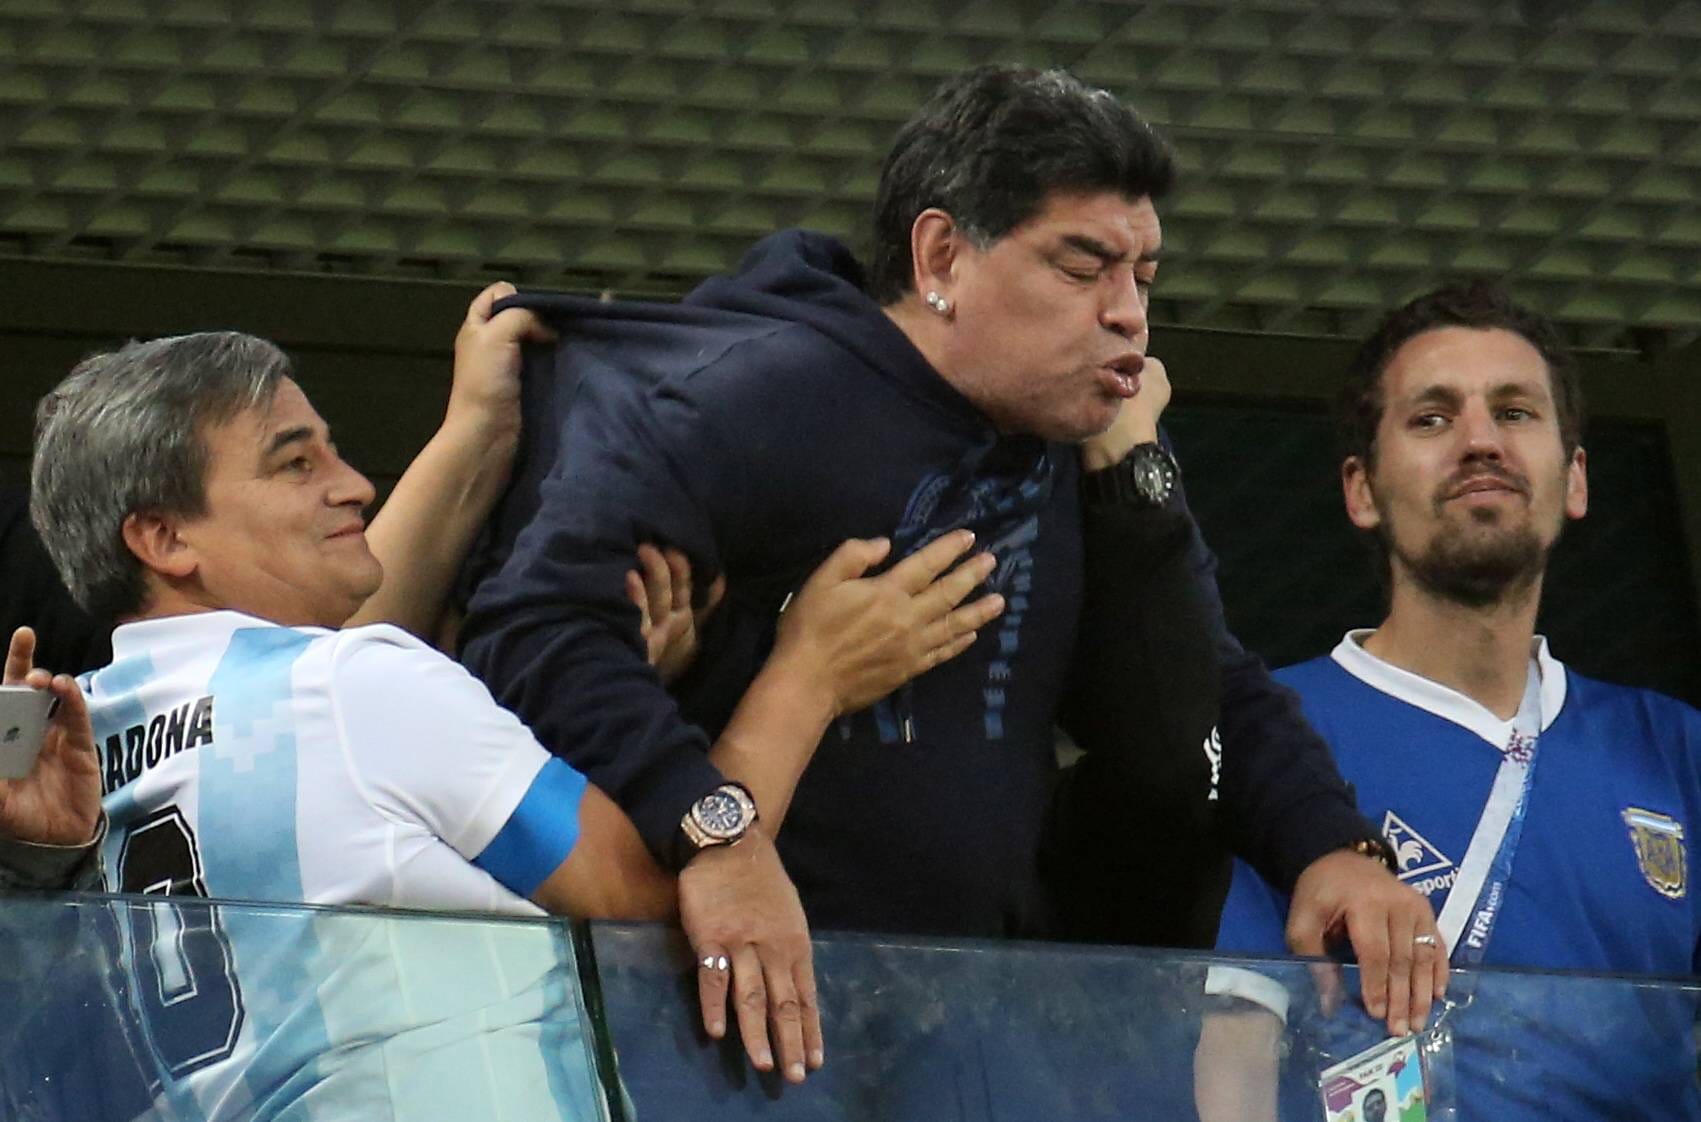 Maradona völlig außer sich: Seine Begleiter unterstützen und lächeln gedrückt.